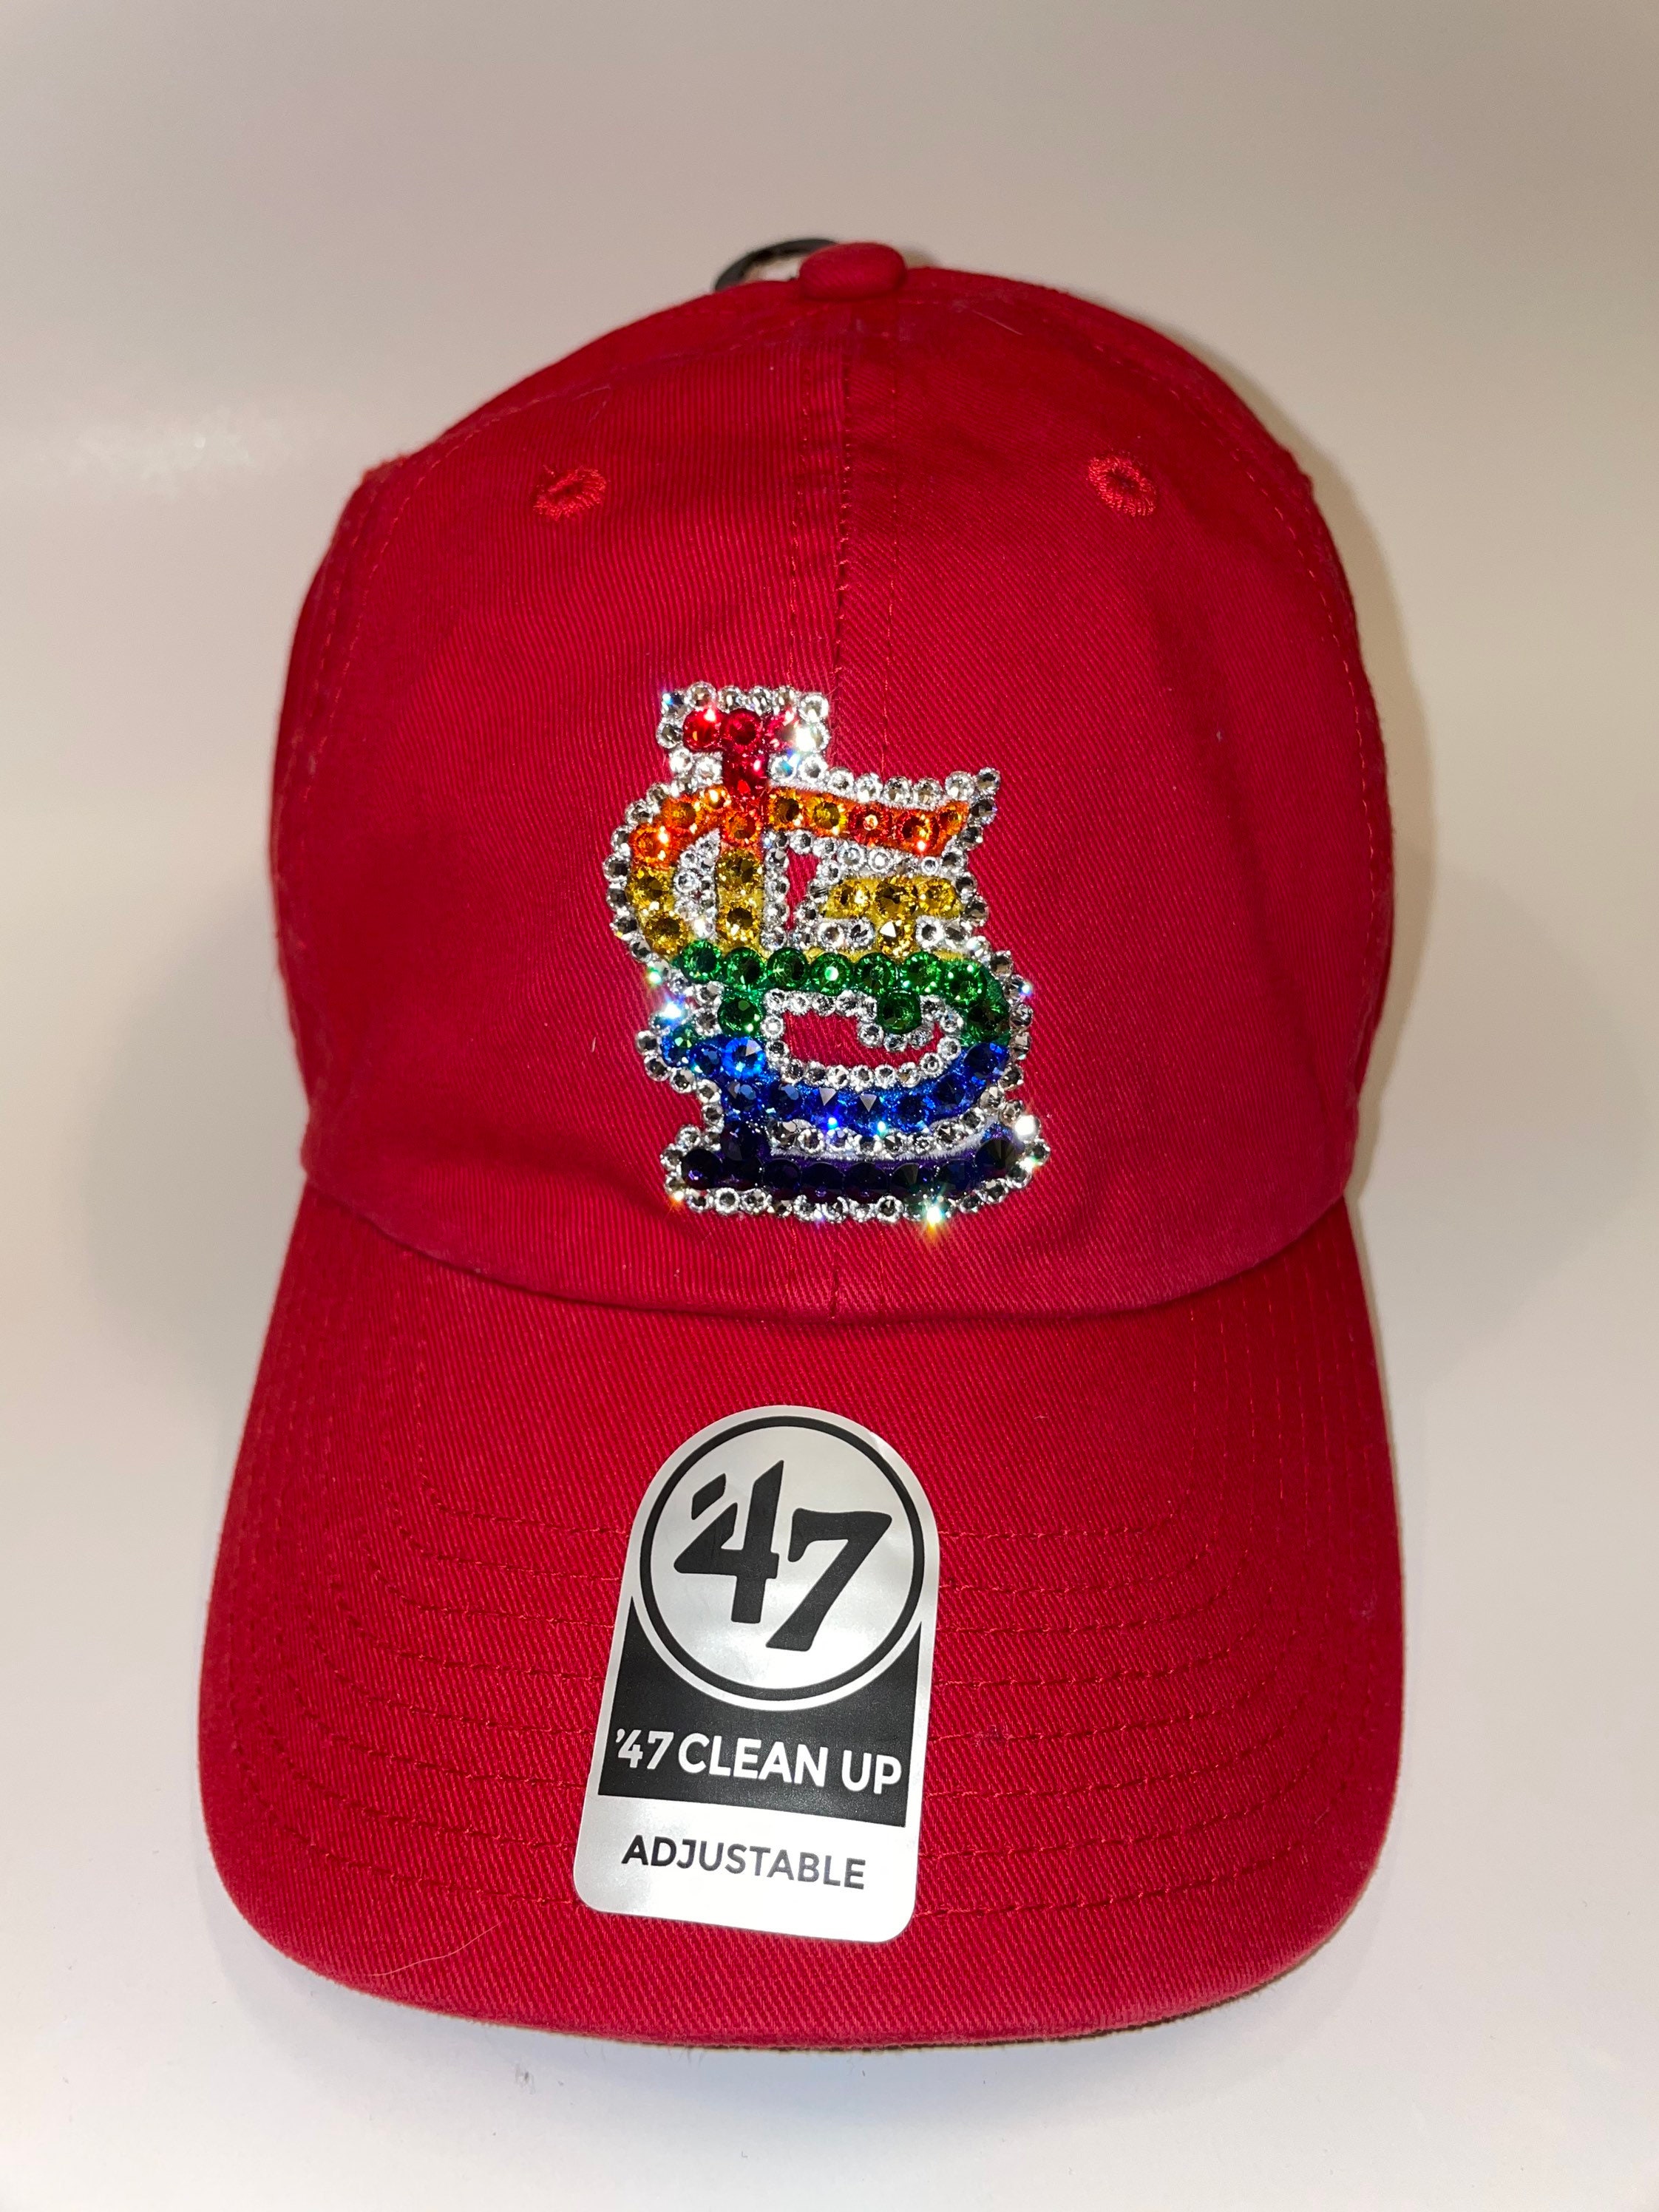 Swarovski Crystal Bling St. Louis Cardinals Adjustable Hat | Etsy